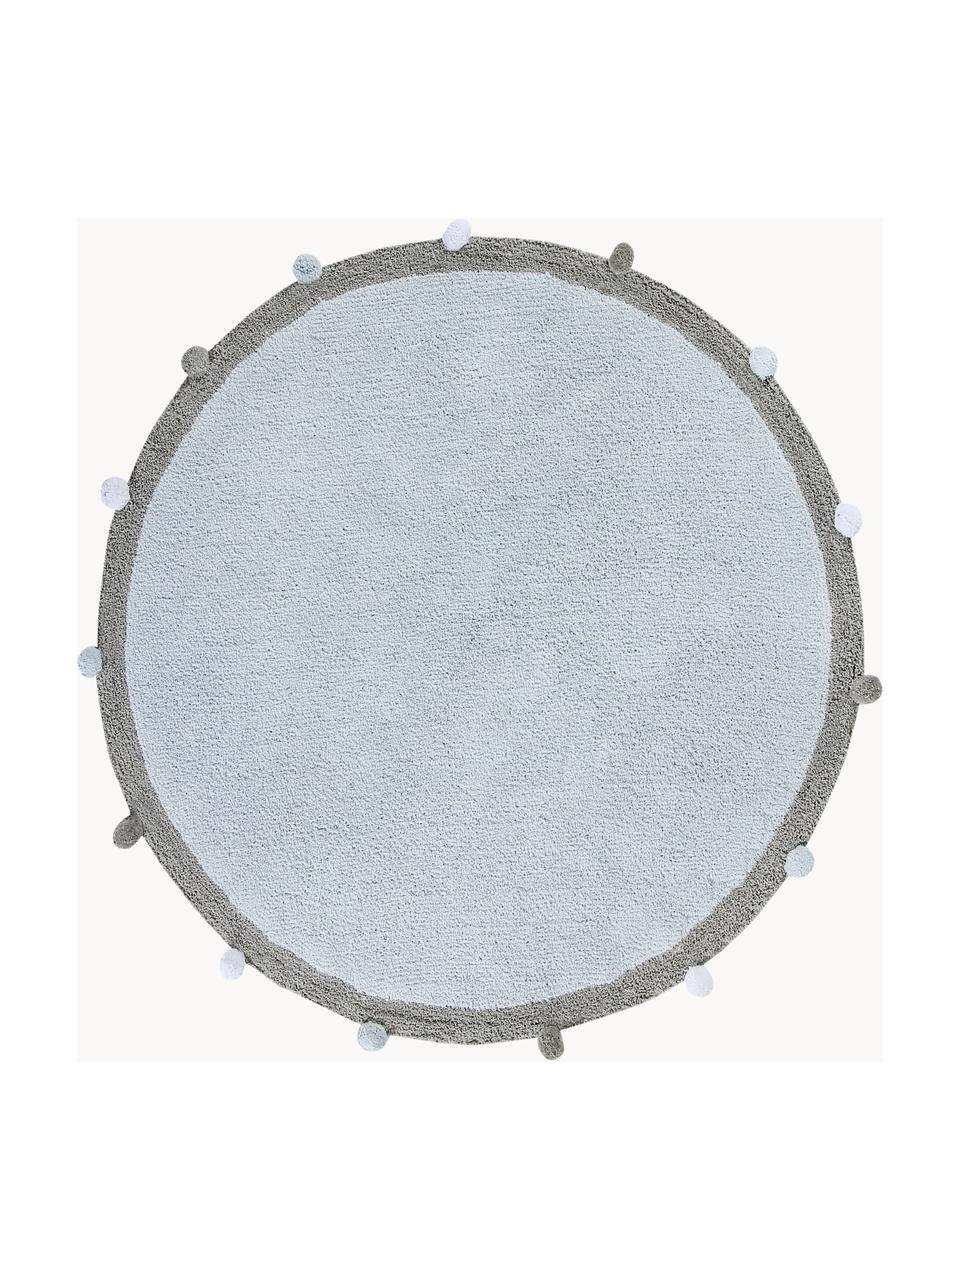 Tappeto per bambini taftato a mano Pompon, lavabile, Retro: 100% cotone, Azzurro, grigio, Ø 120 cm (taglia S)